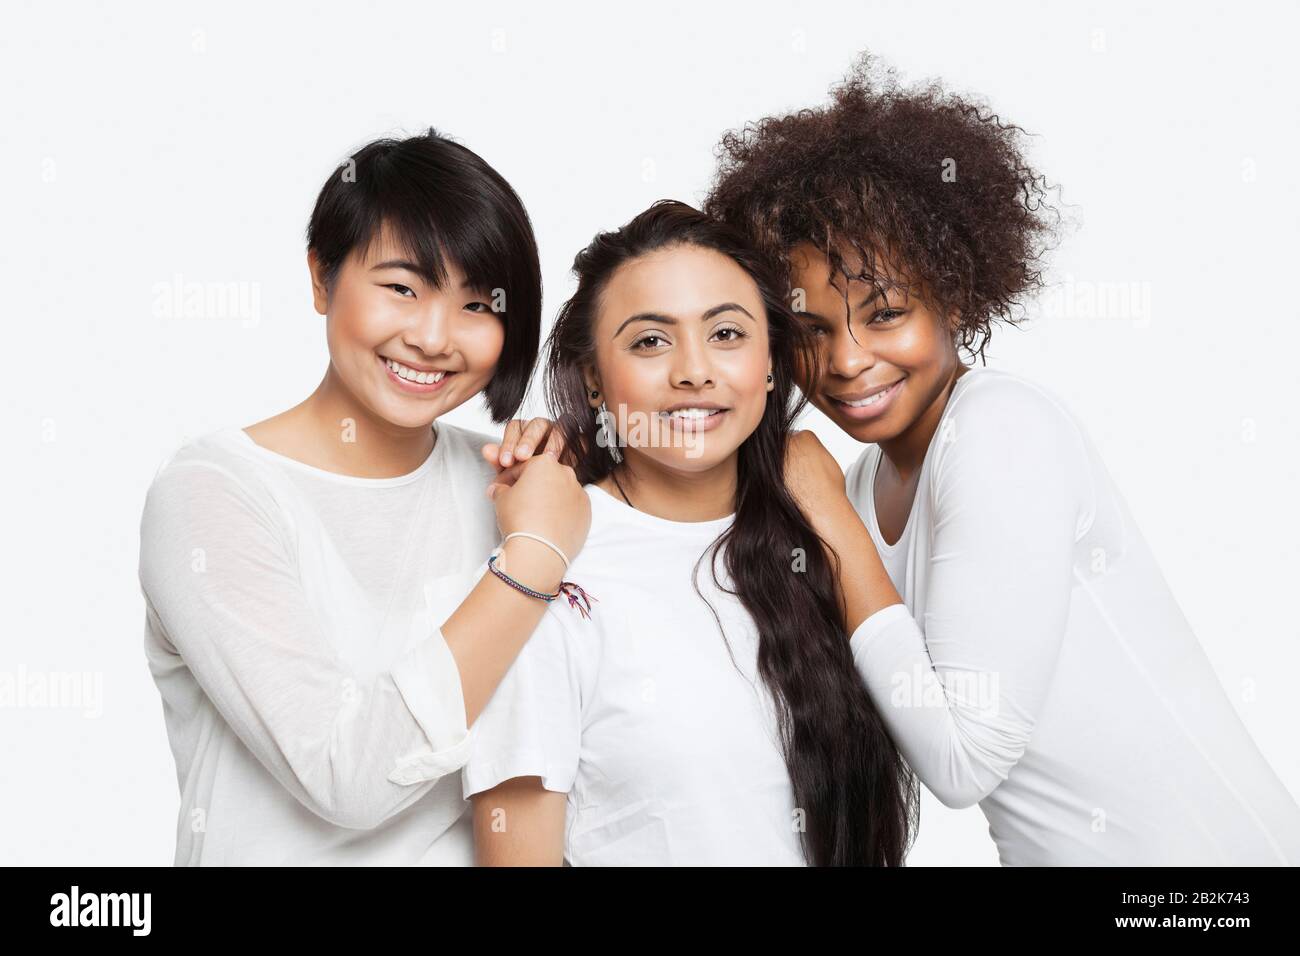 Portrait de jeunes filles multiethniques souriant sur fond blanc Banque D'Images